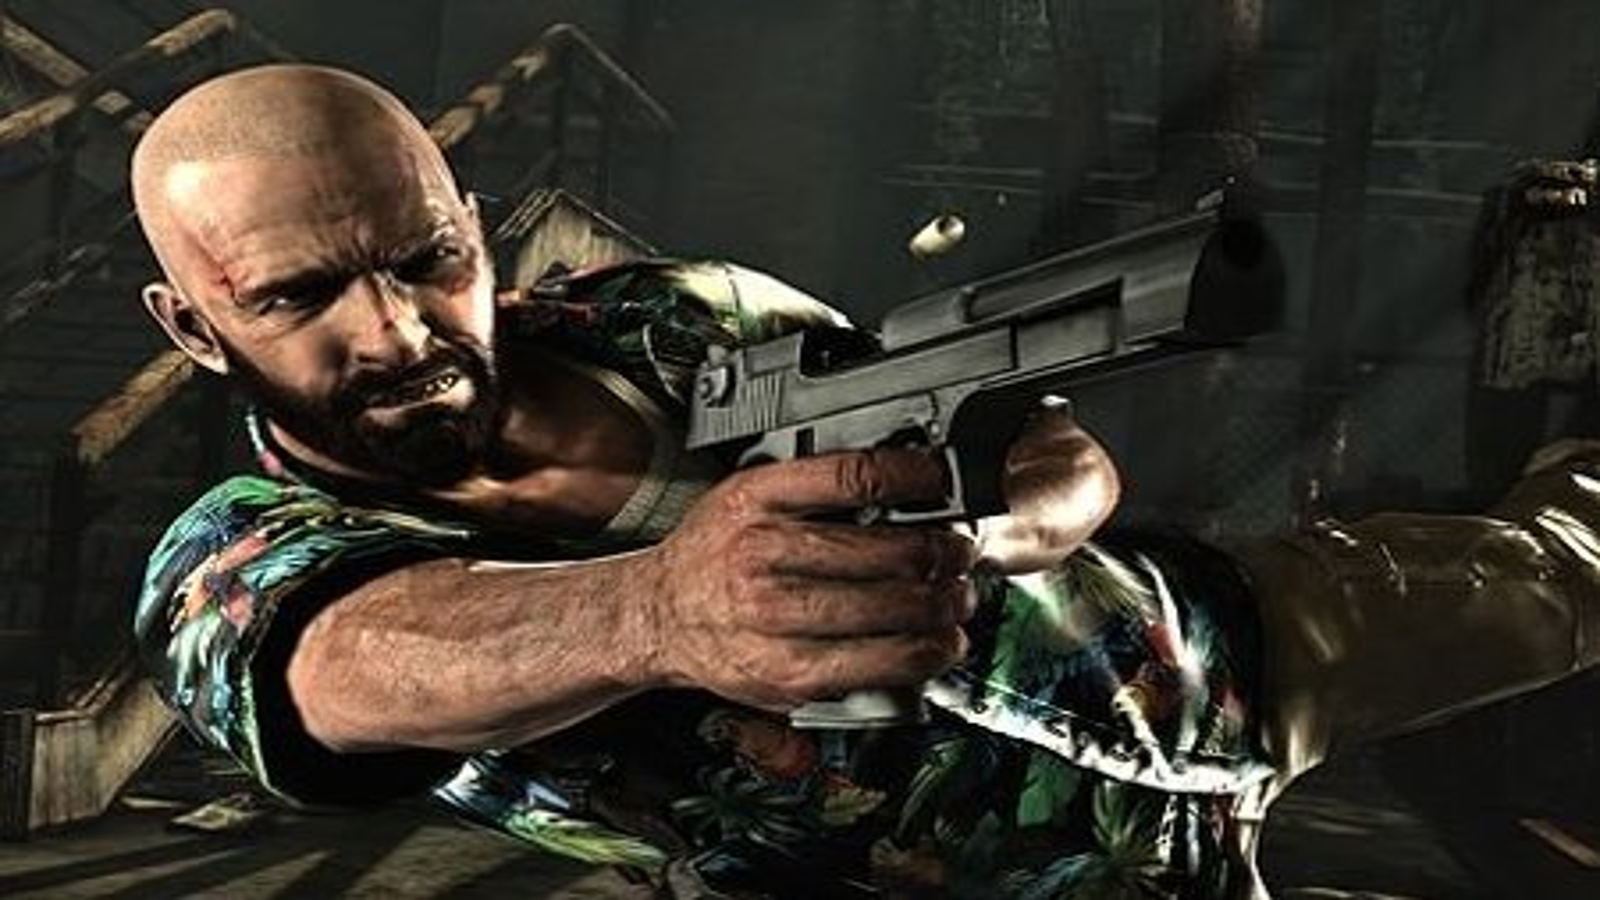 Max Payne 3 Requisitos: veja o review do game e os requisitos